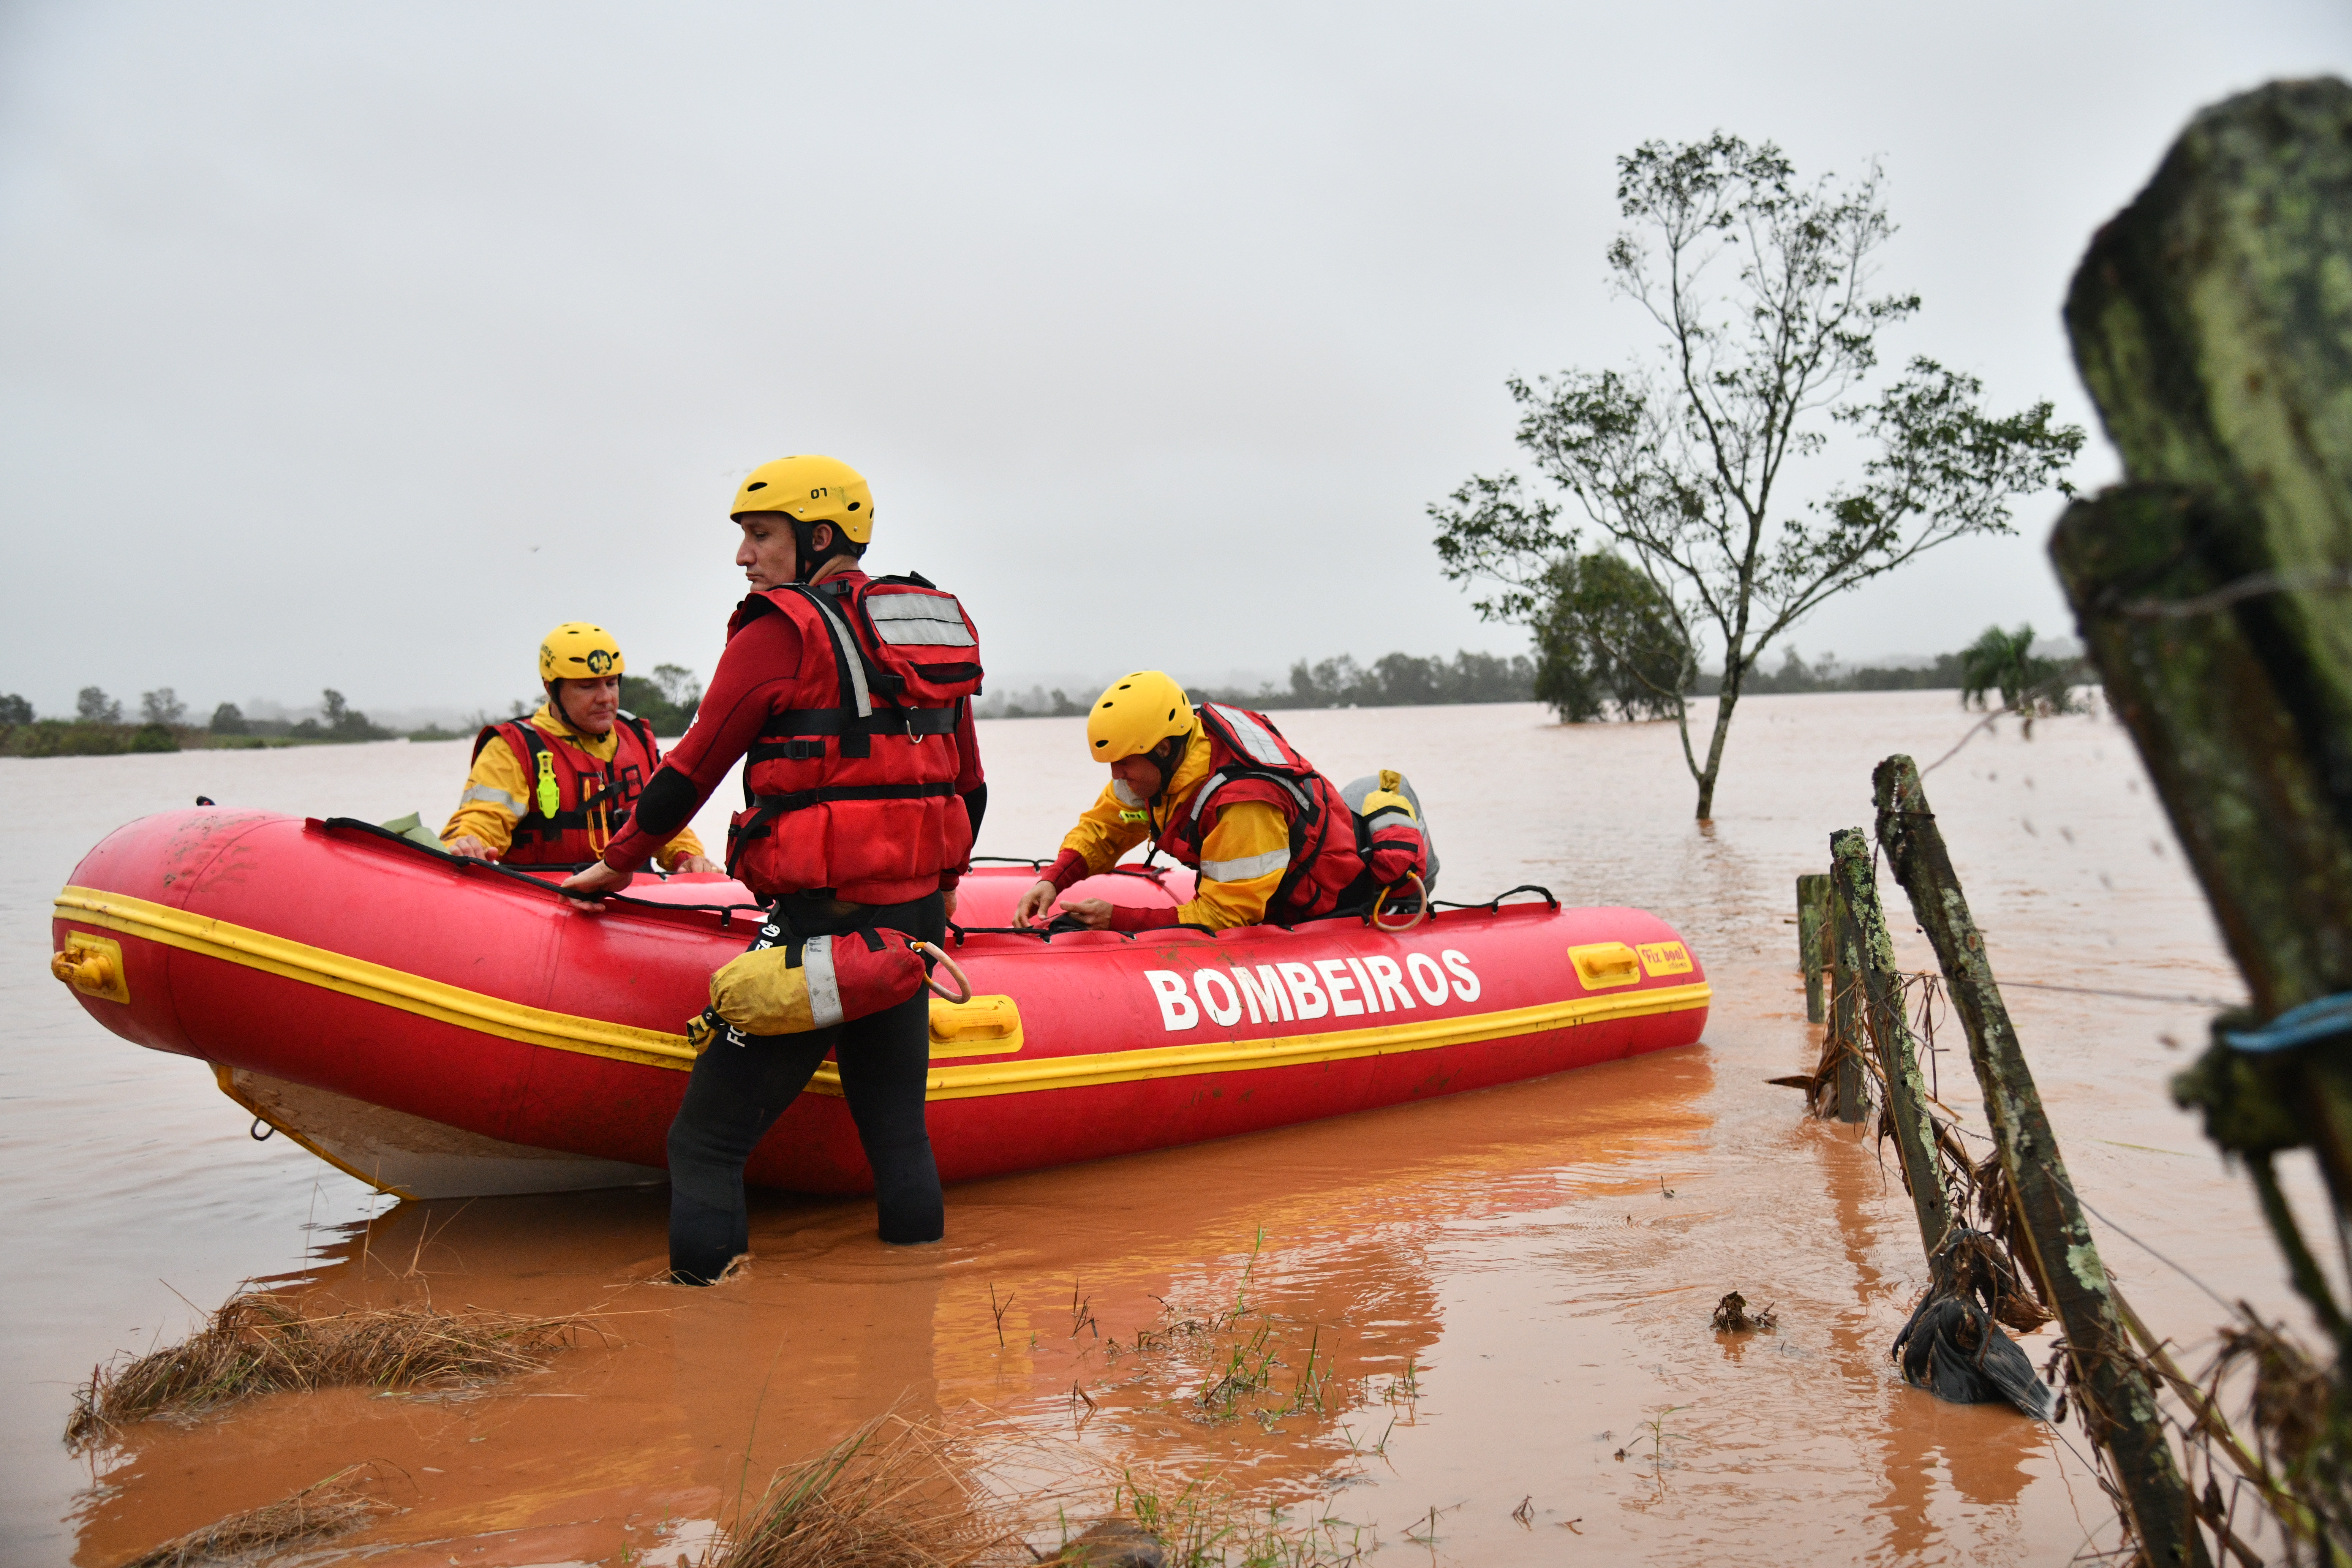 Bombeiros catarinenses resgatam mais de 300 pessoas e 30 animais no Rio Grande do Sul